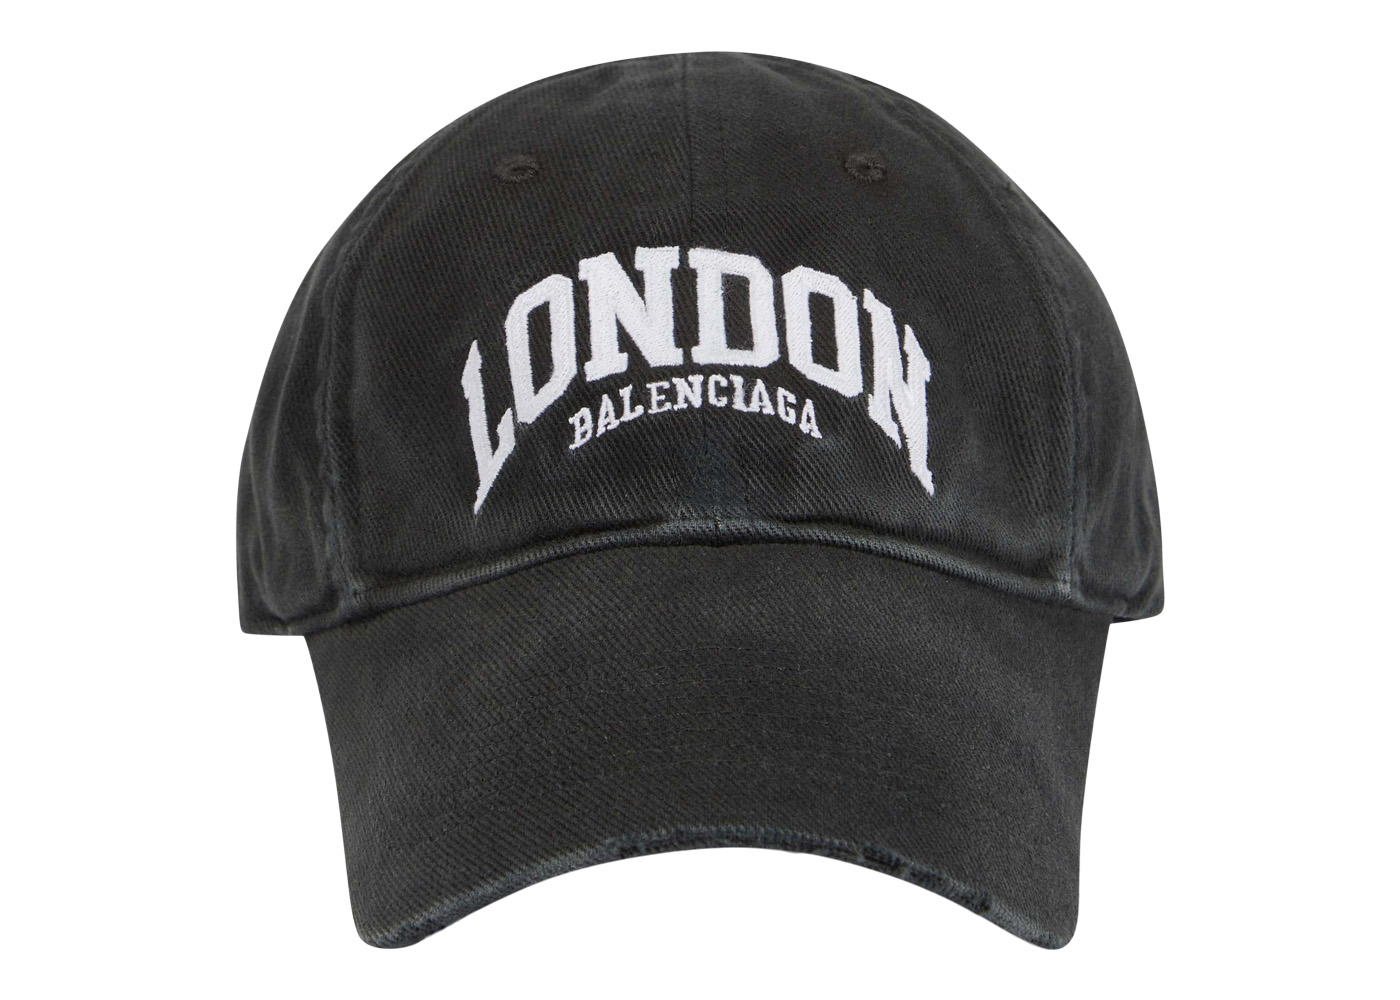 ギャラbalenciaga London baseball cap 帽子